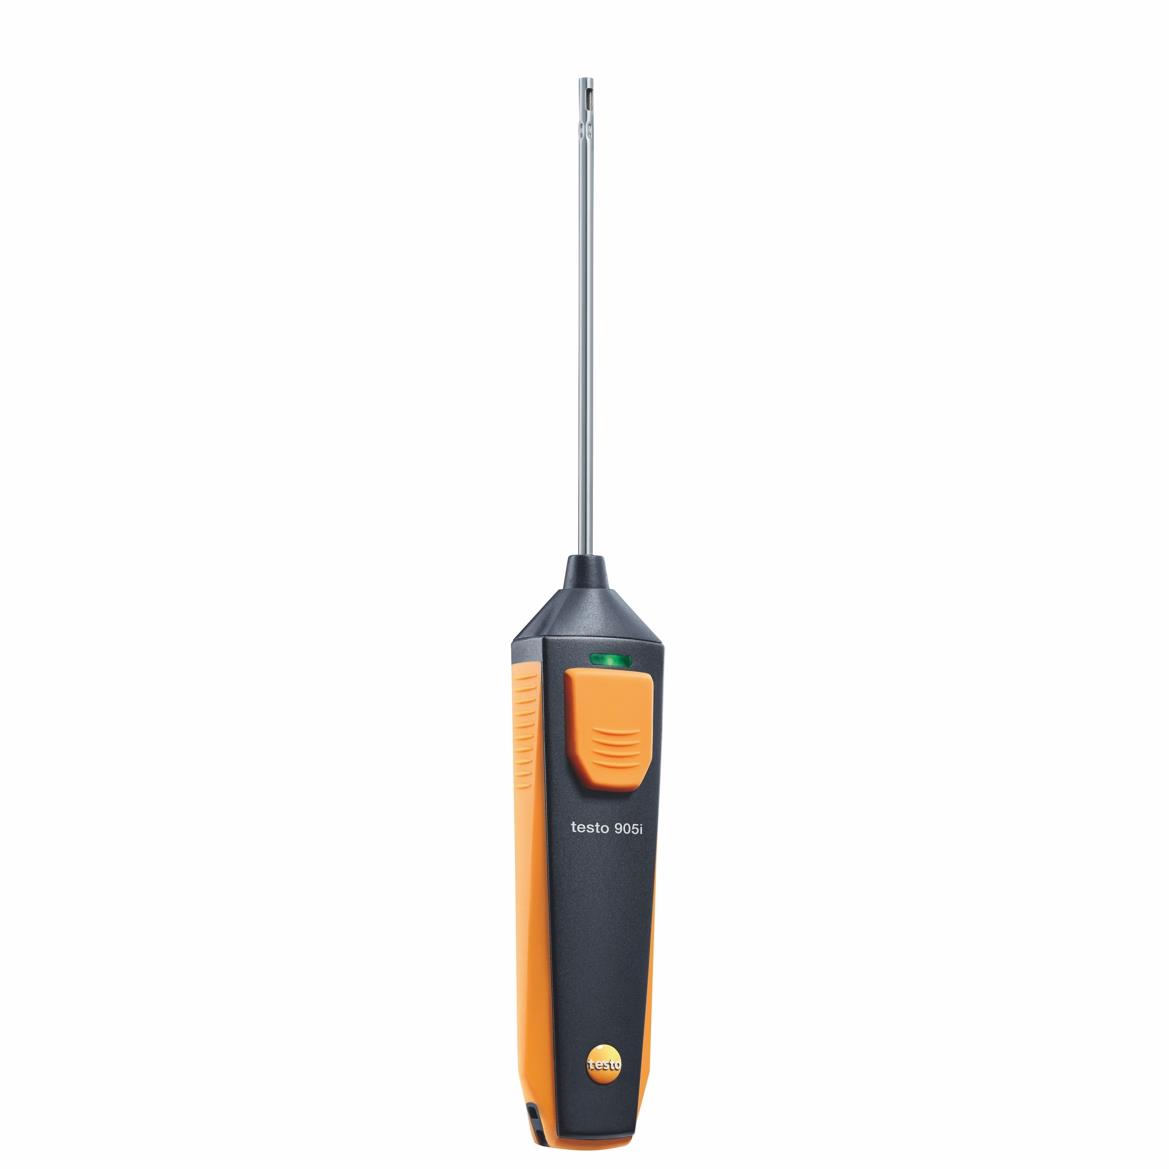 testo 905i - Thermometer mit Smartphone-Bedienung - Sonderpreis